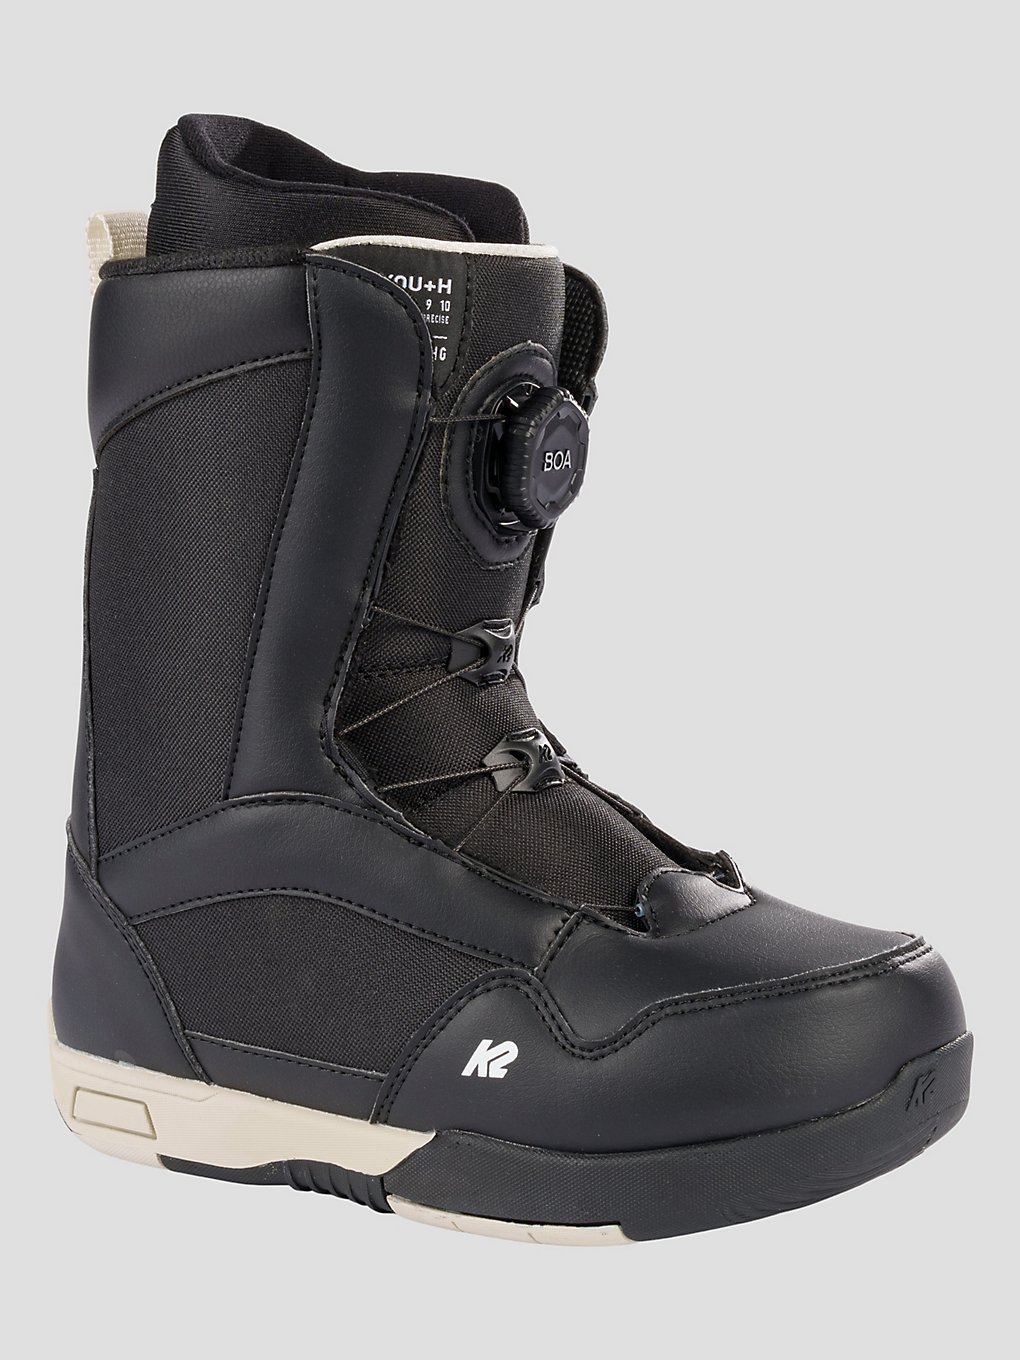 K2 You+h 2024 Snowboard-Boots black kaufen